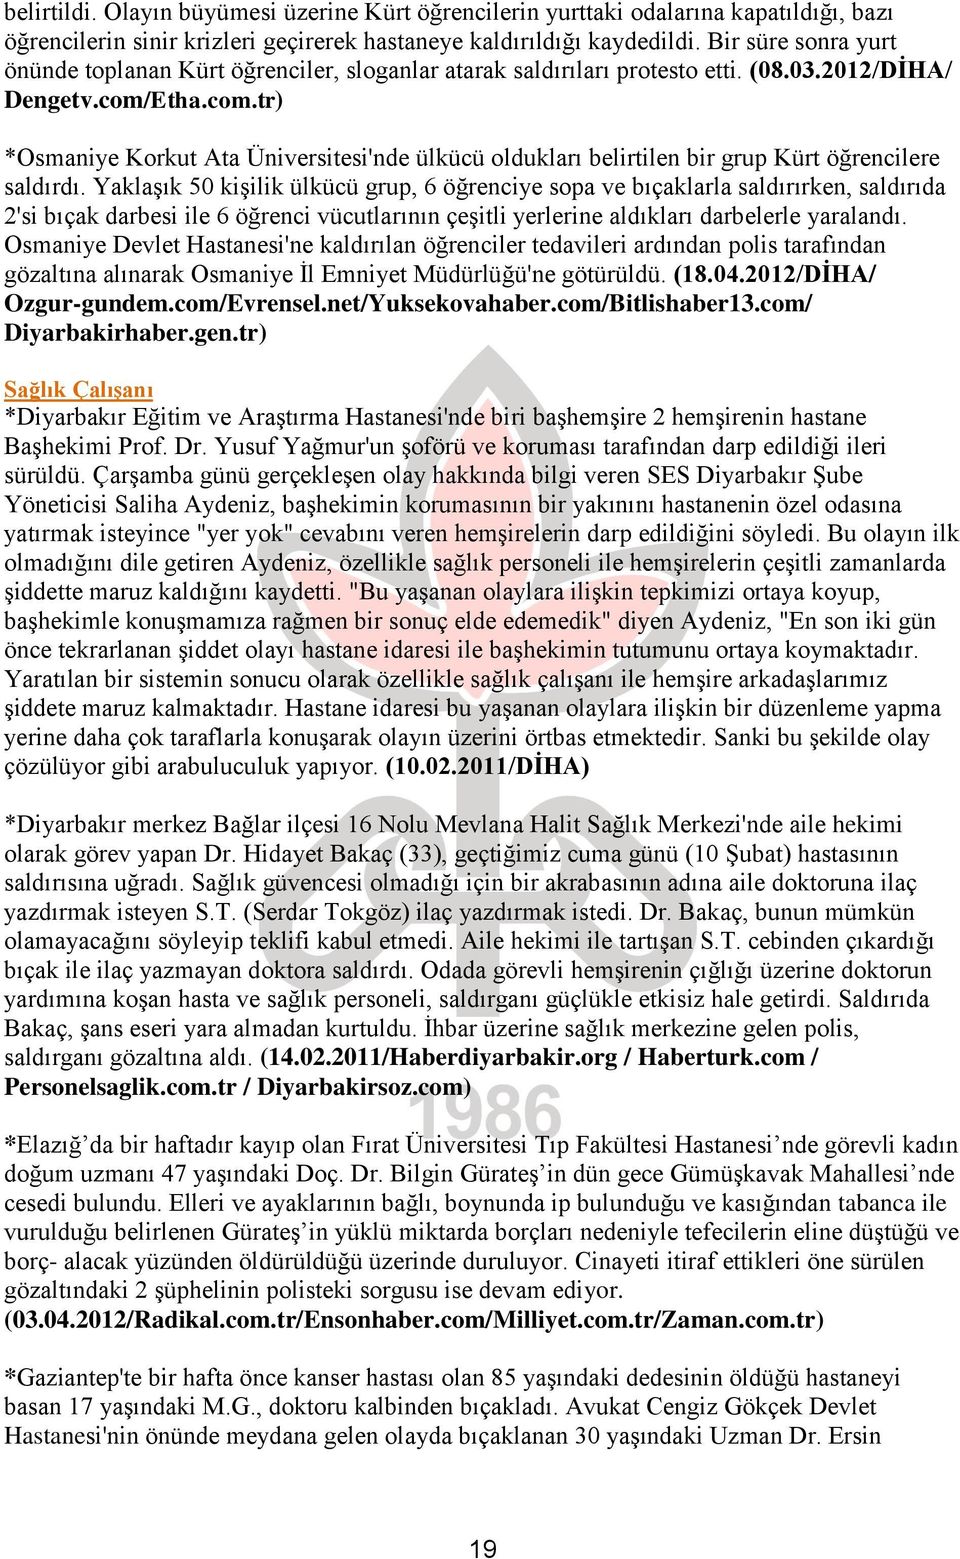 Etha.com.tr) *Osmaniye Korkut Ata Üniversitesi'nde ülkücü oldukları belirtilen bir grup Kürt öğrencilere saldırdı.